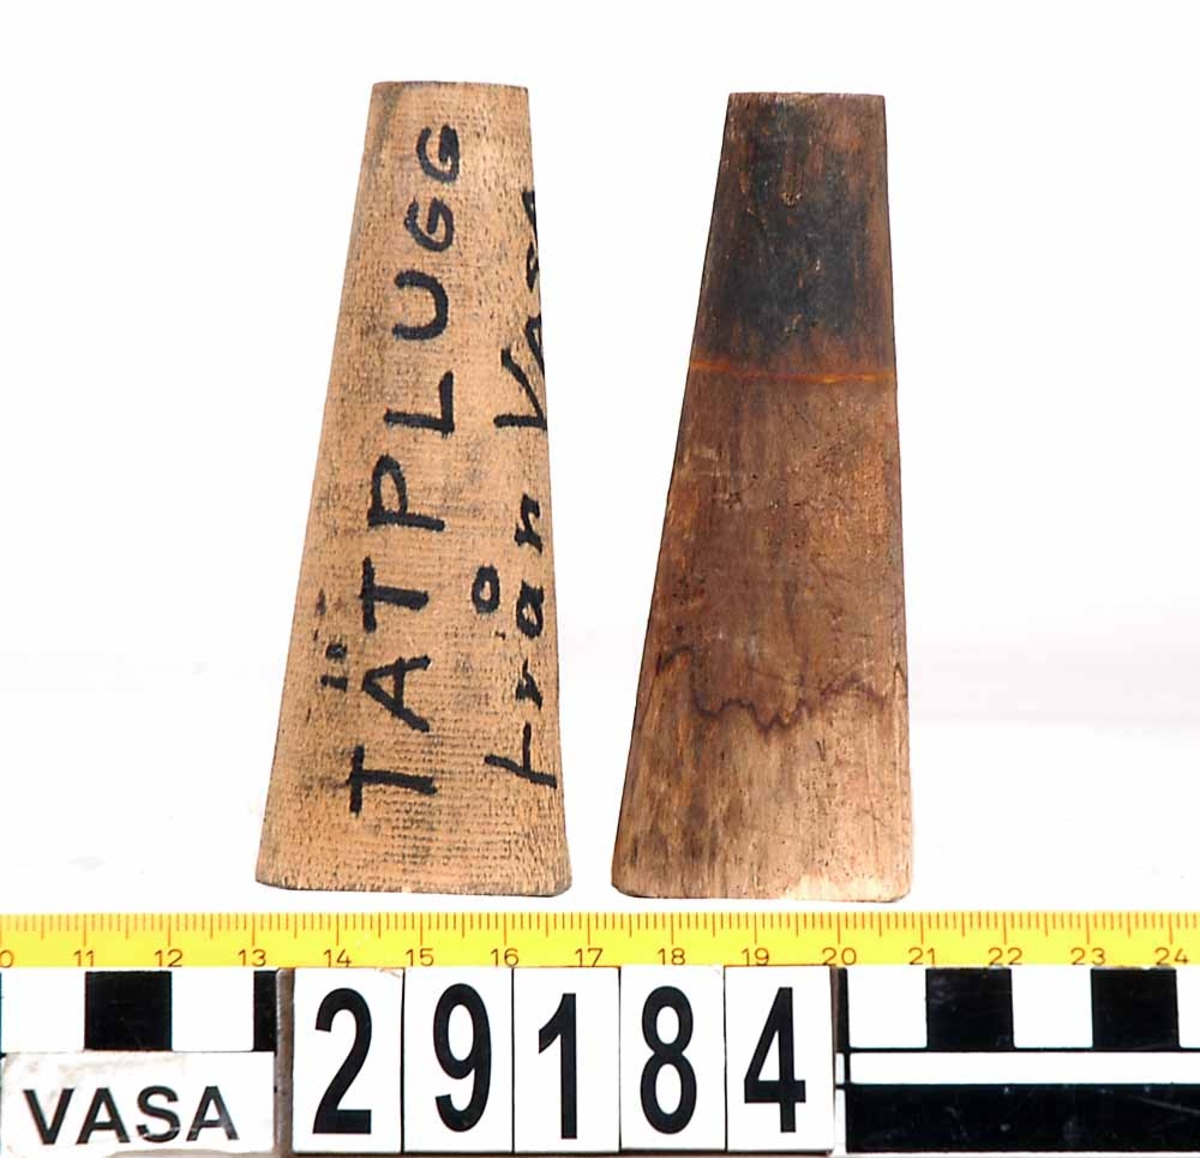 Två stycken träpluggar.
En plugg ser använd ut och har inristat: "Minne från Wasas tätning Edvin Fälting". Den andra pluggen ser mindre använd ut och har en inskrift i tusch: "Tätplugg från Vasa 1961".